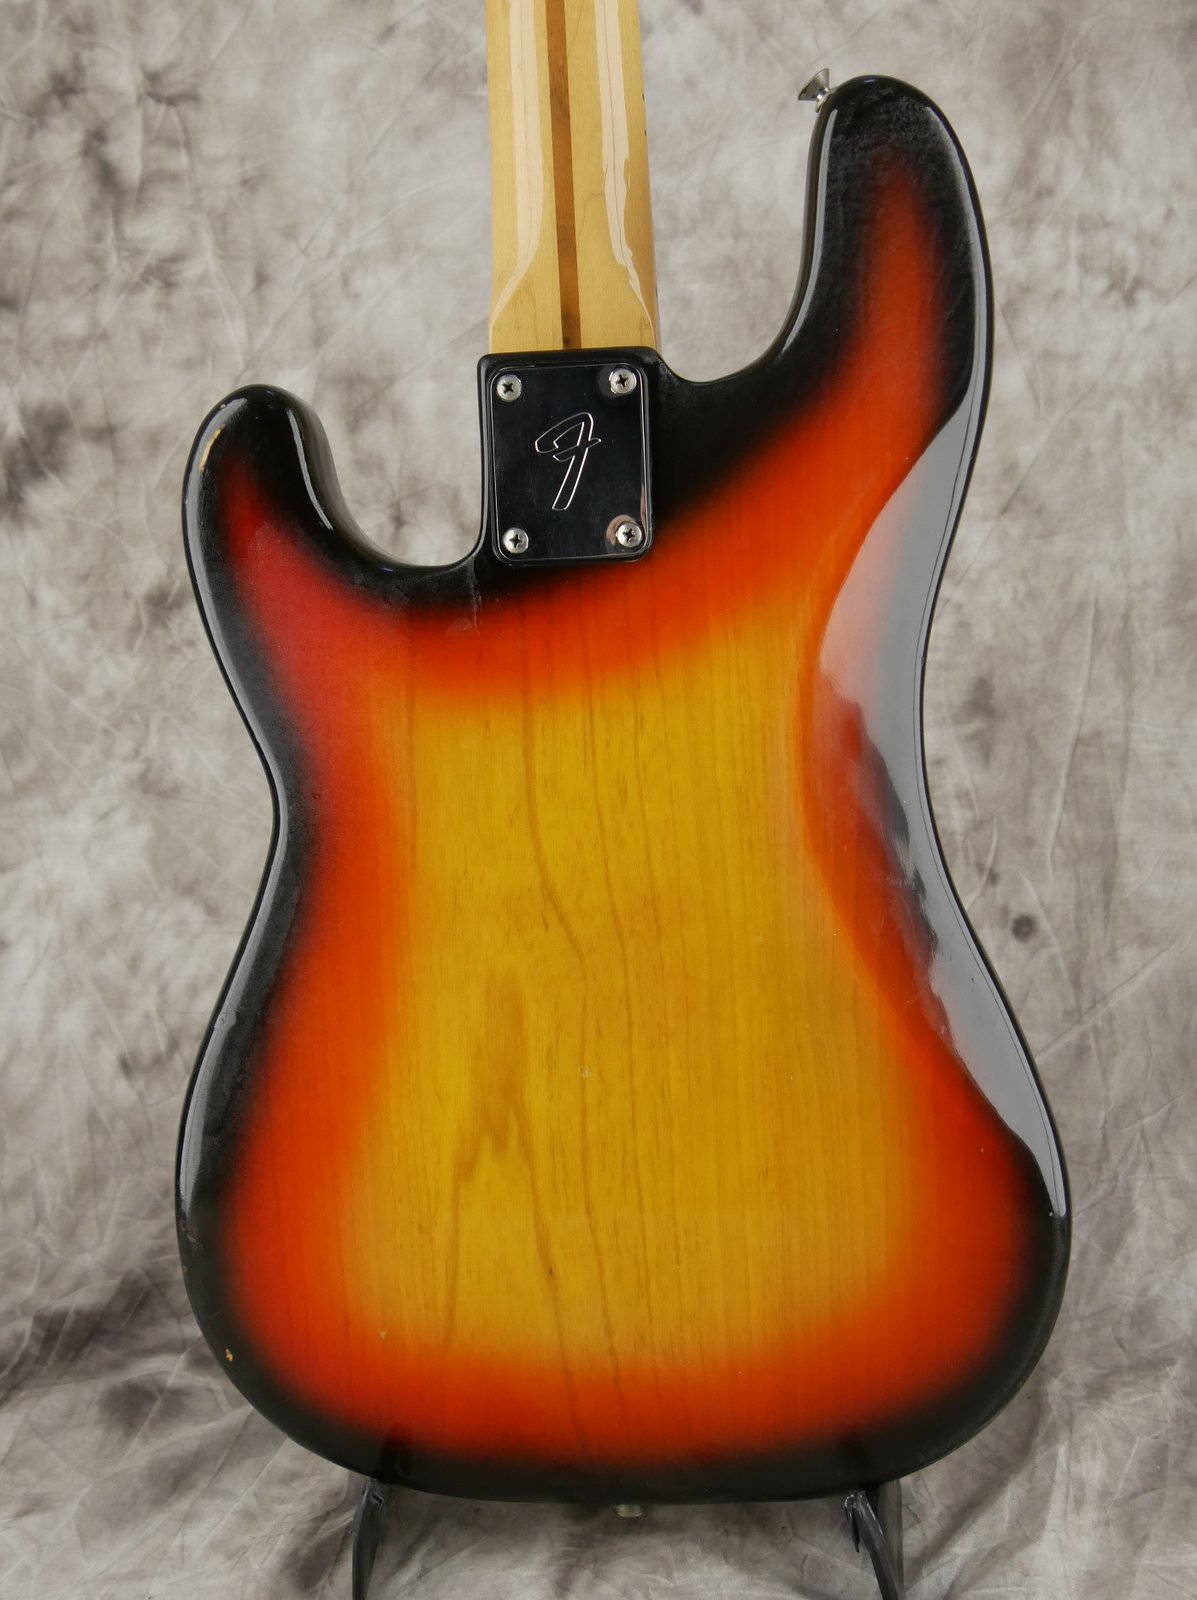 Fender-Precision-Bass-1979-sunburst-004.JPG